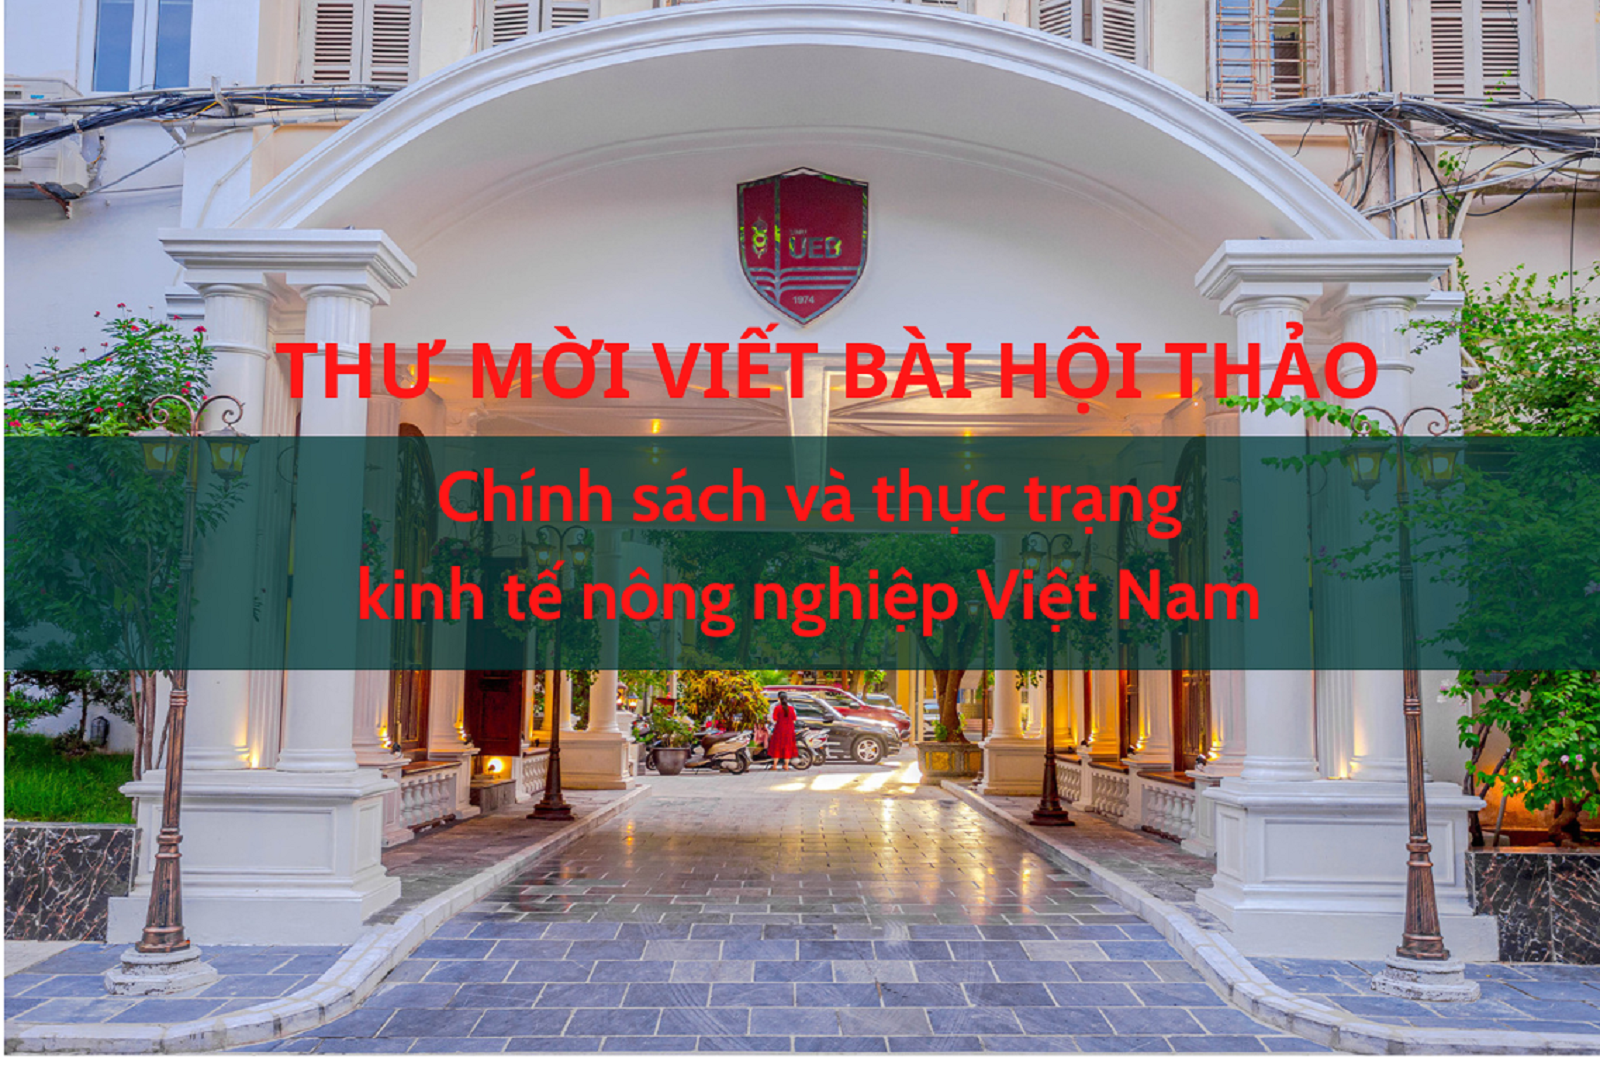 Thư mời viết bài Hội thảo "Chính sách và thực trạng kinh tế nông nghiệp Việt Nam”